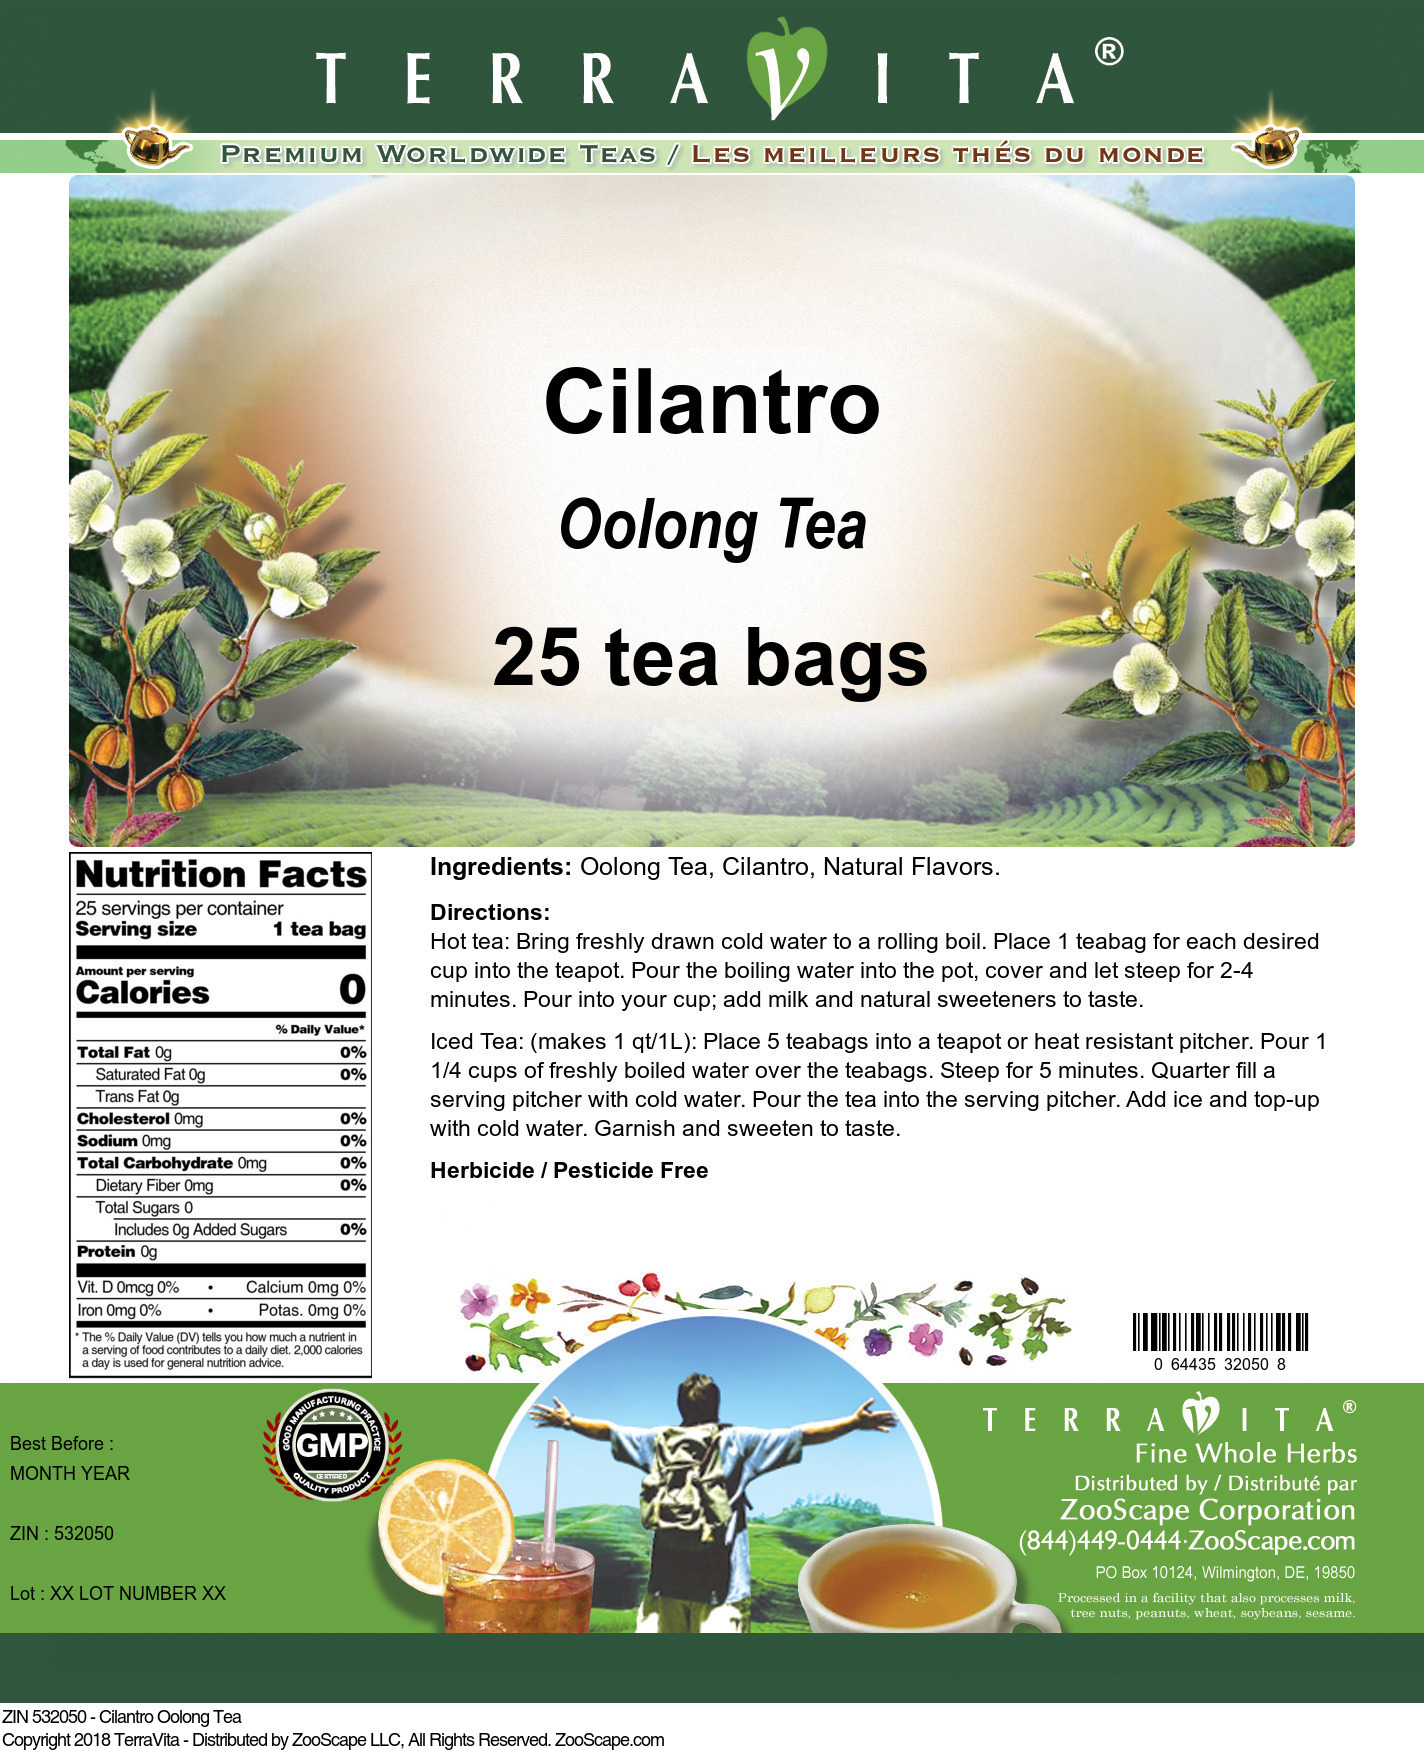 Cilantro Oolong Tea - Label